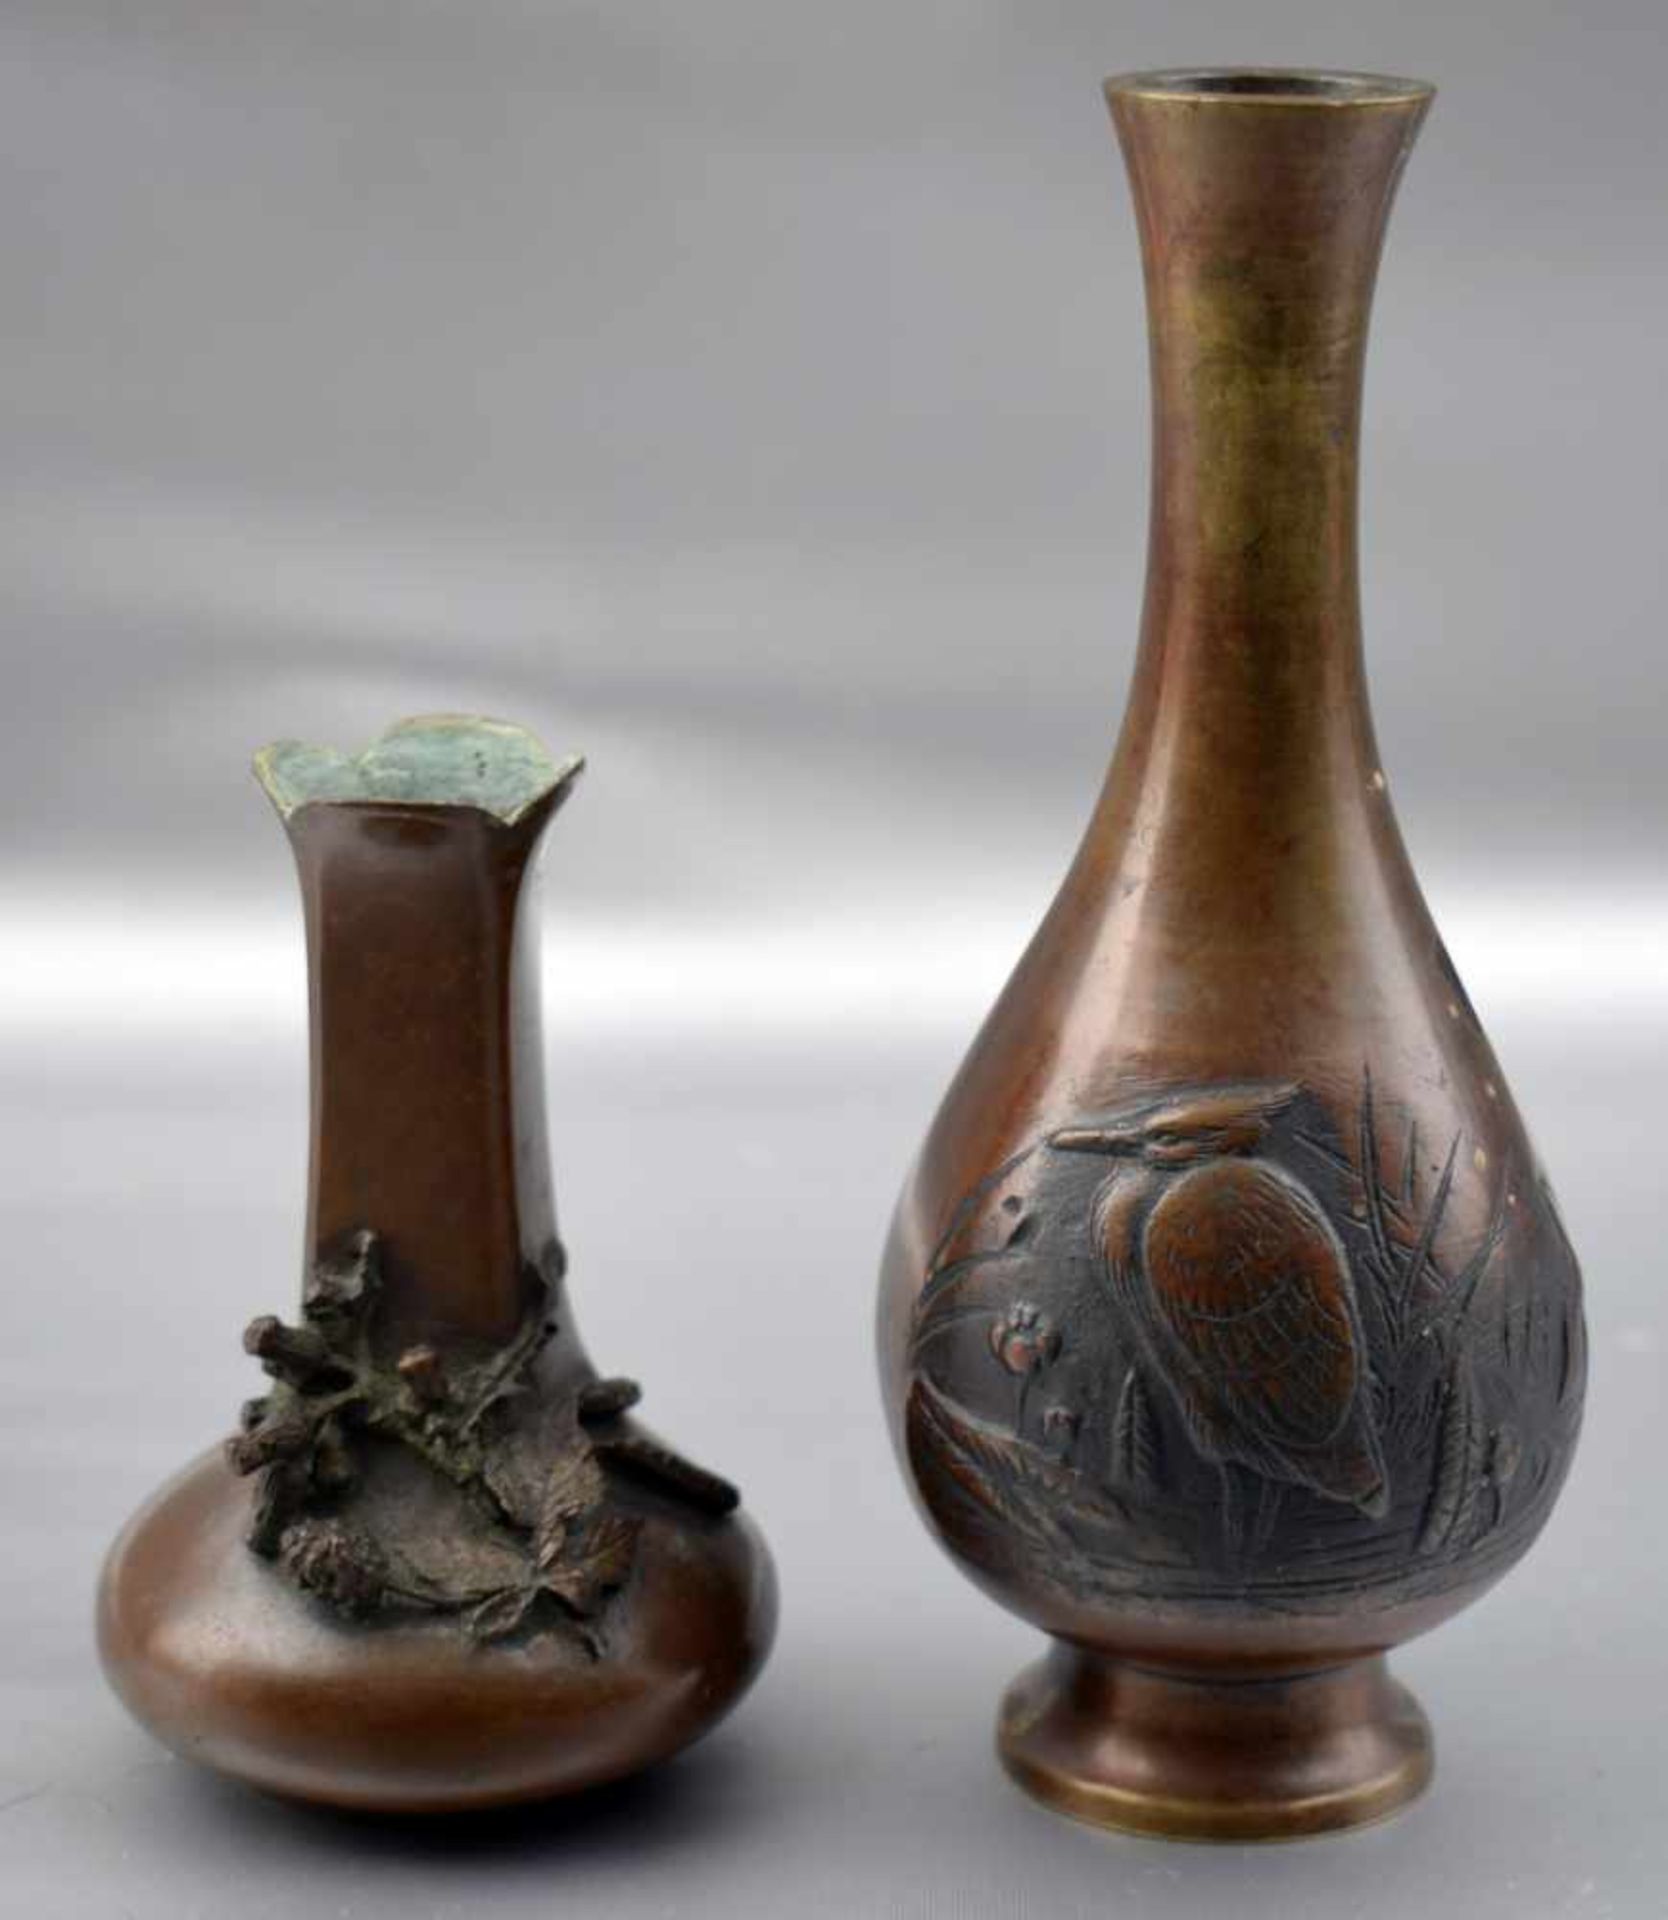 Zwei Vasen Bronze, mit halbplastischen Blüten und Vögeln verziert, verschiedene Ausführungen, H 16